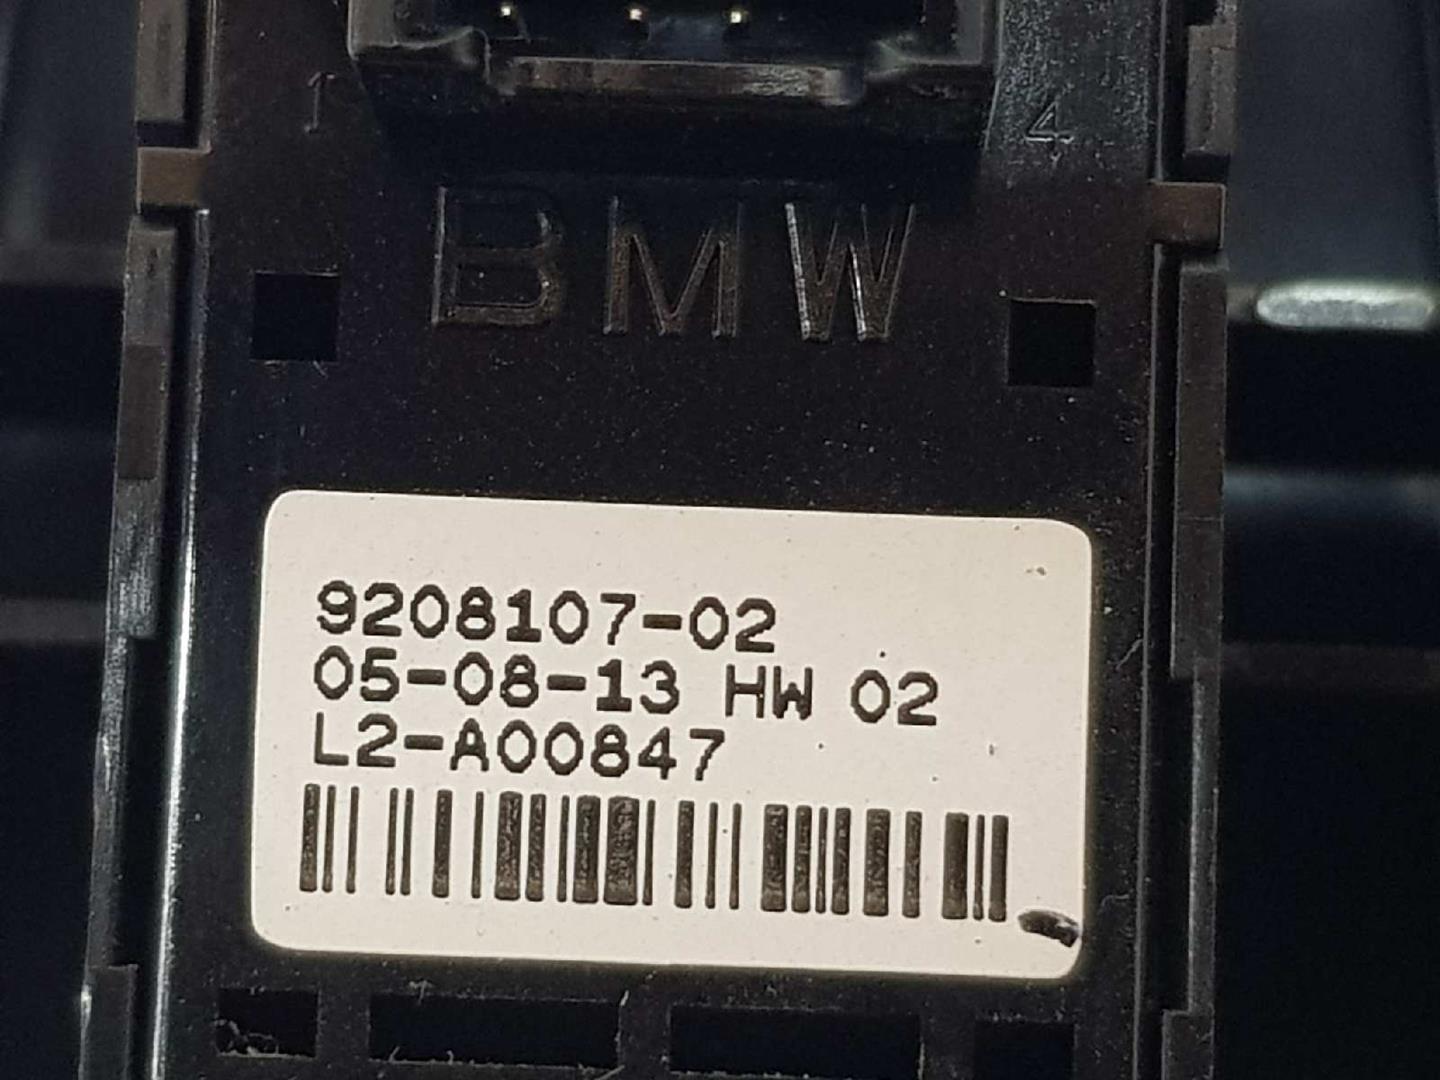 BMW 1 Series F20/F21 (2011-2020) Кнопка стеклоподъемника передней правой двери 9208107, 61319208107 19656864